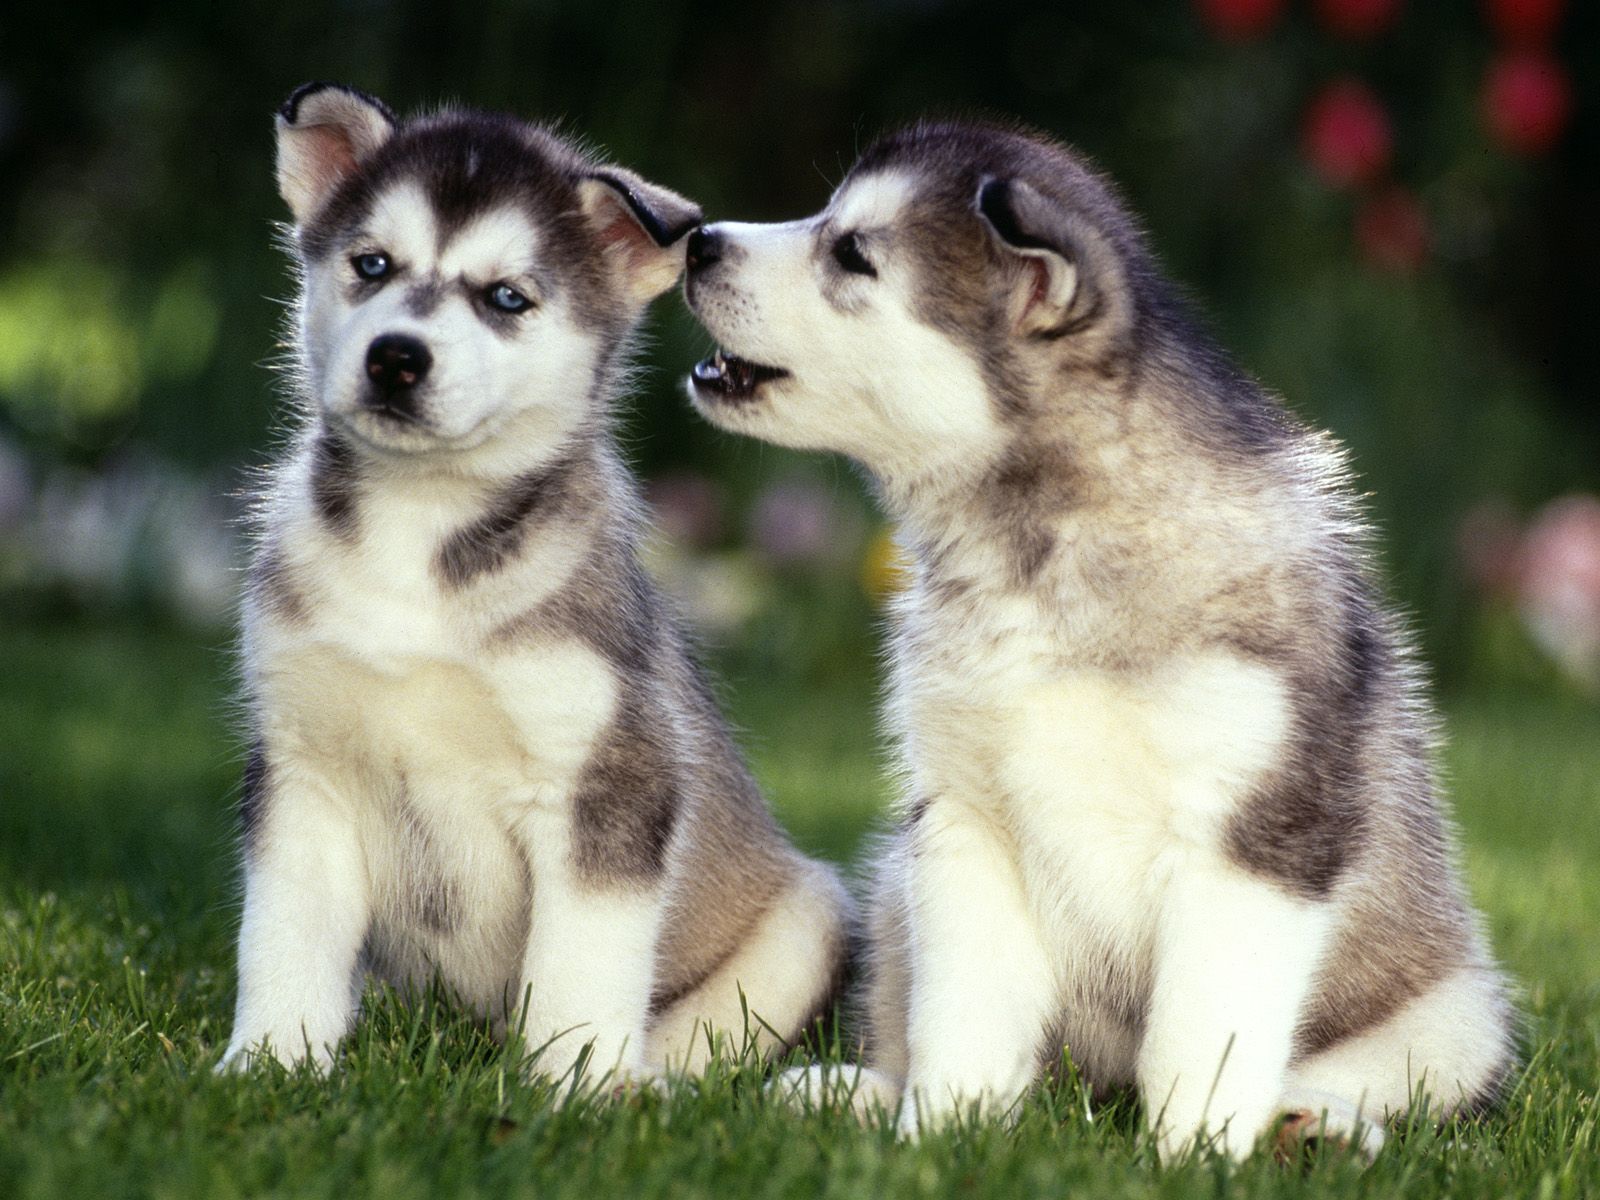 Siberian Husky Puppies | Huskeys | Pinterest | Husky puppy, Siberian ...